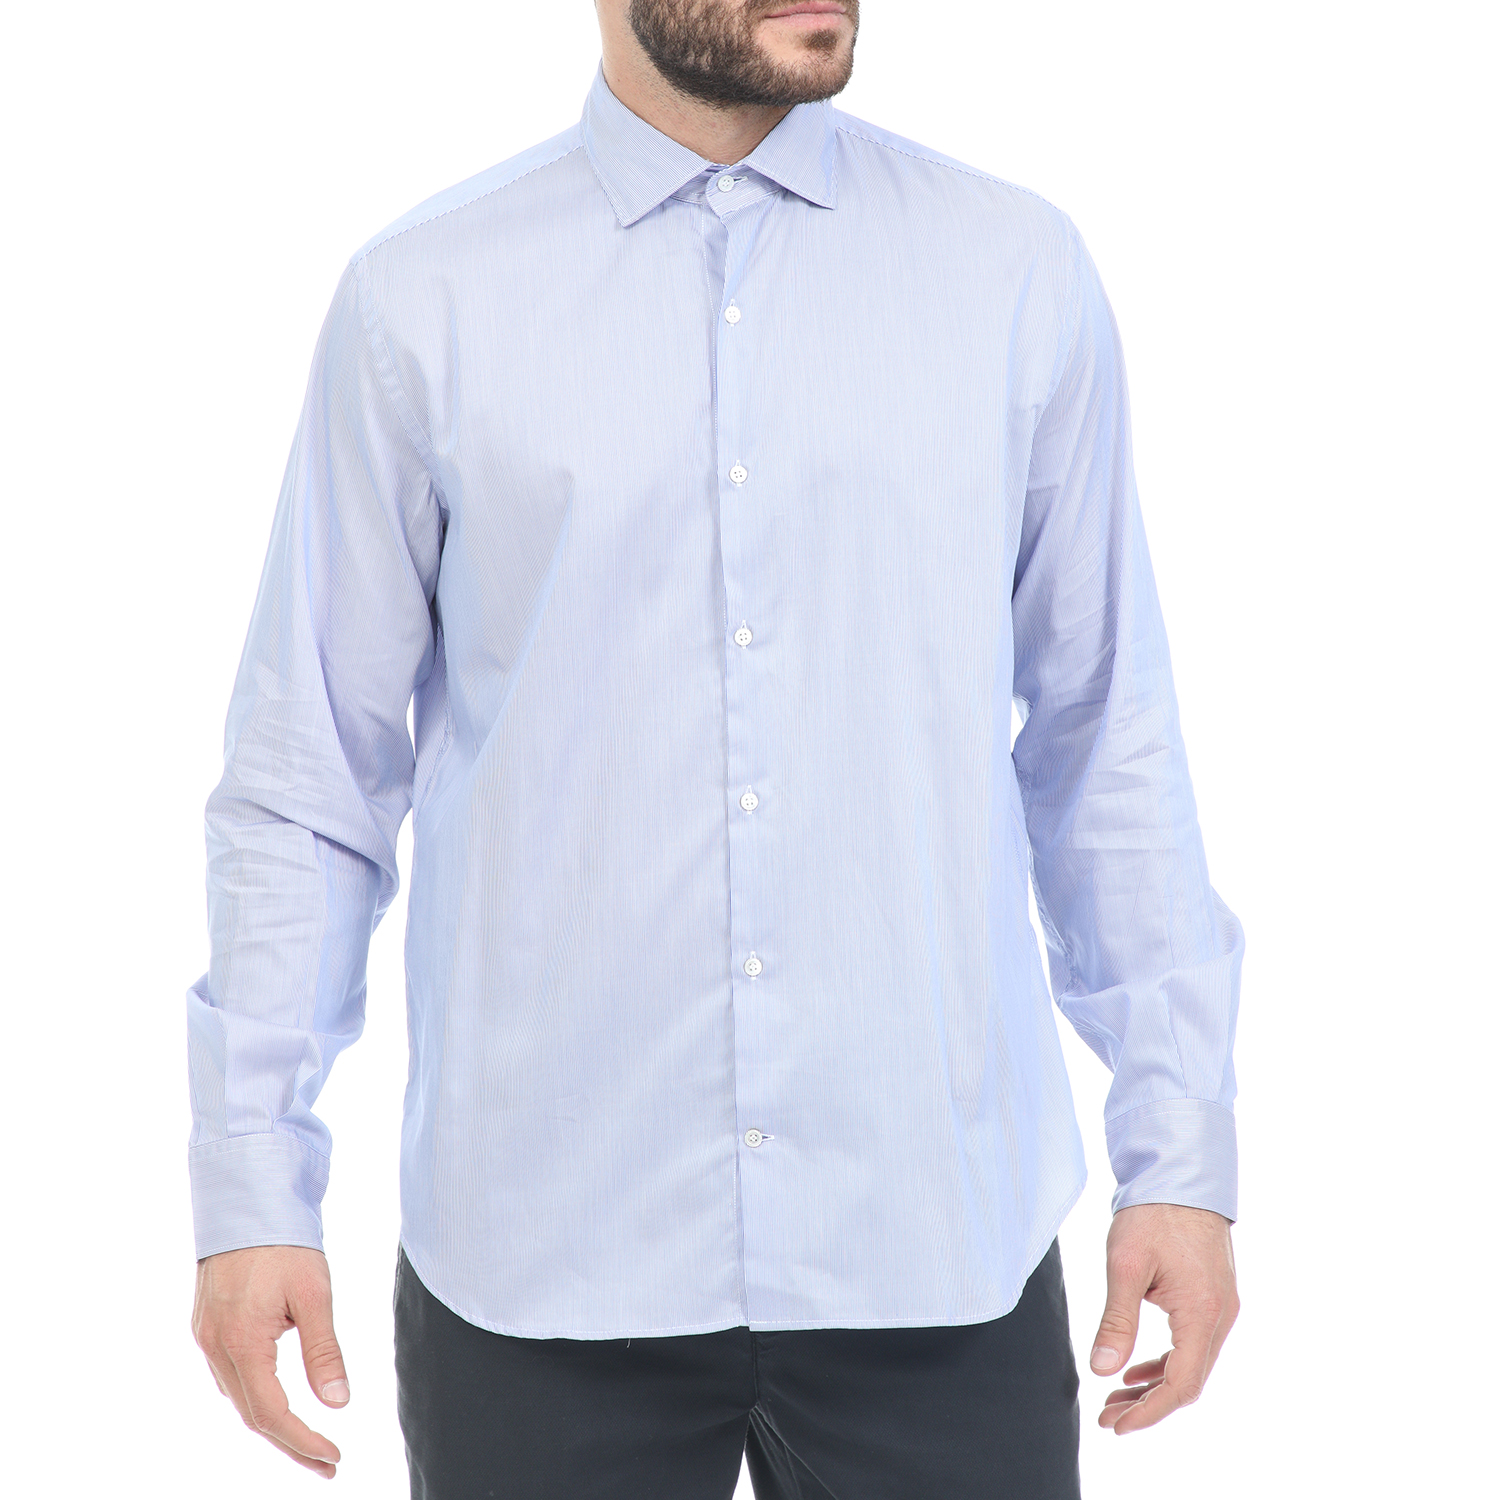 Ανδρικά/Ρούχα/Πουκάμισα/Μακρυμάνικα BROOKSFIELD - Ανδρικό πουκάμισο BROOKSFIELD γαλάζιο